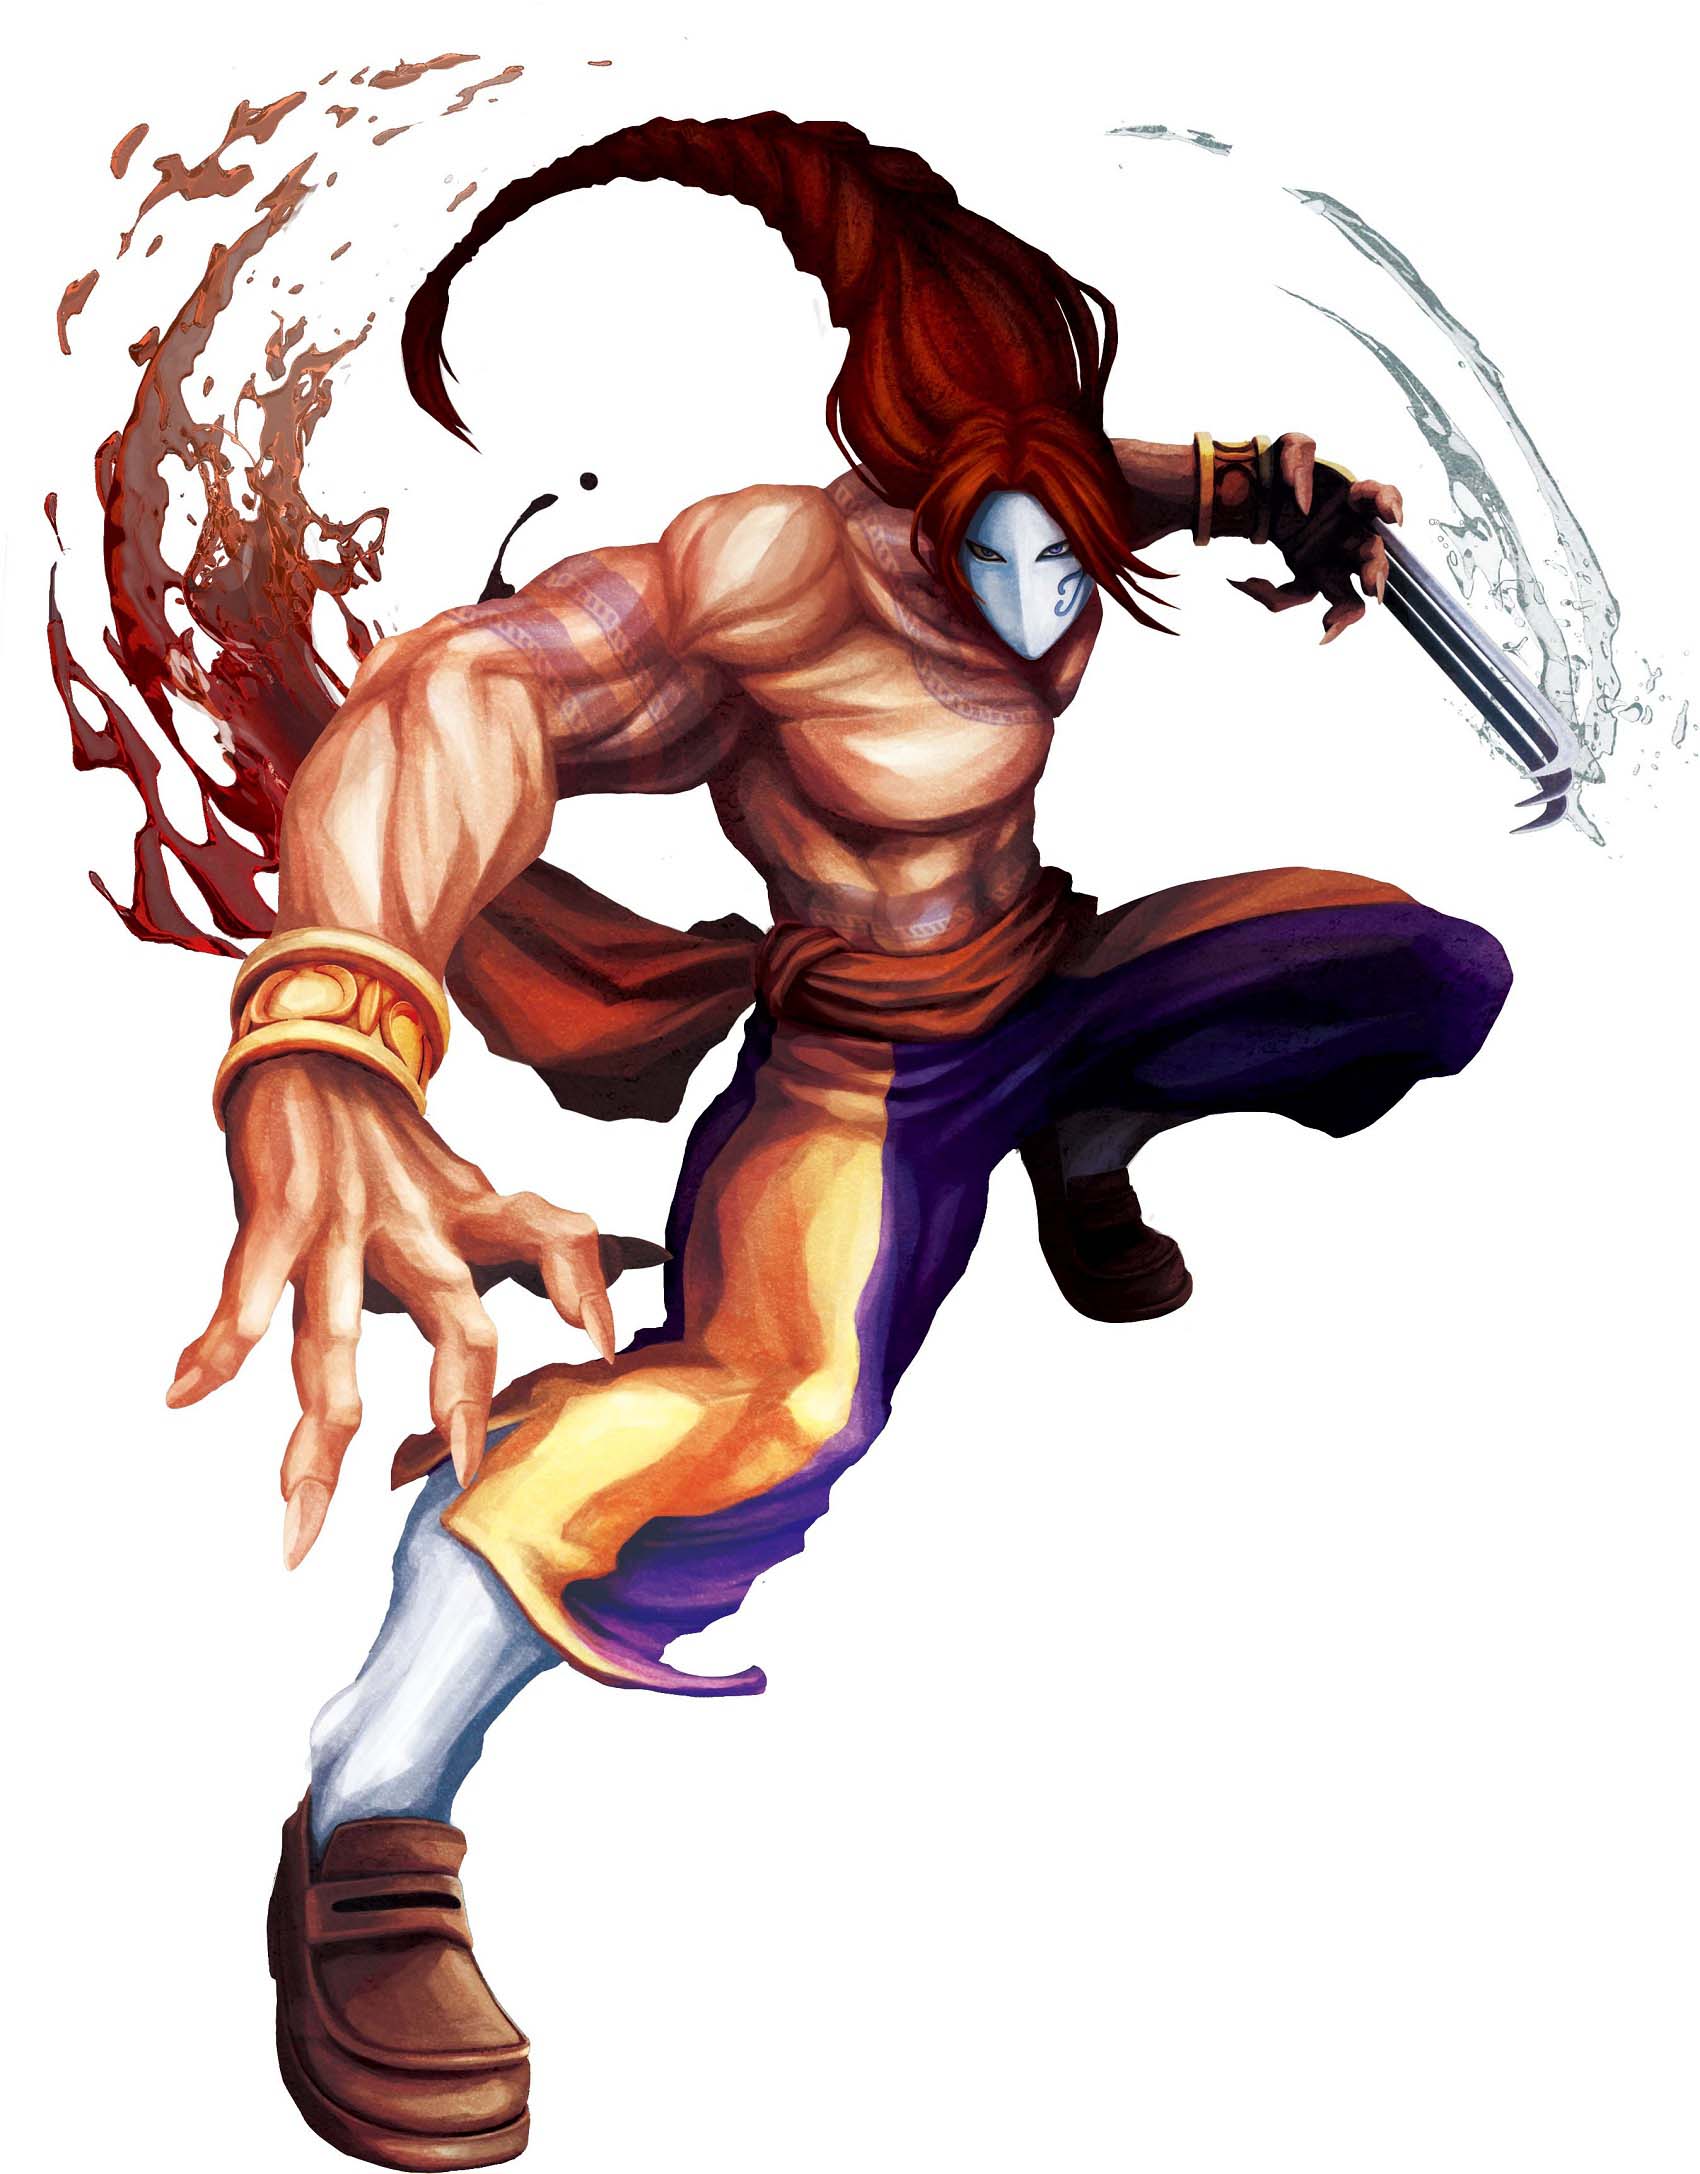 Juri, Street Fighter vs. Mortal Kombat Wiki